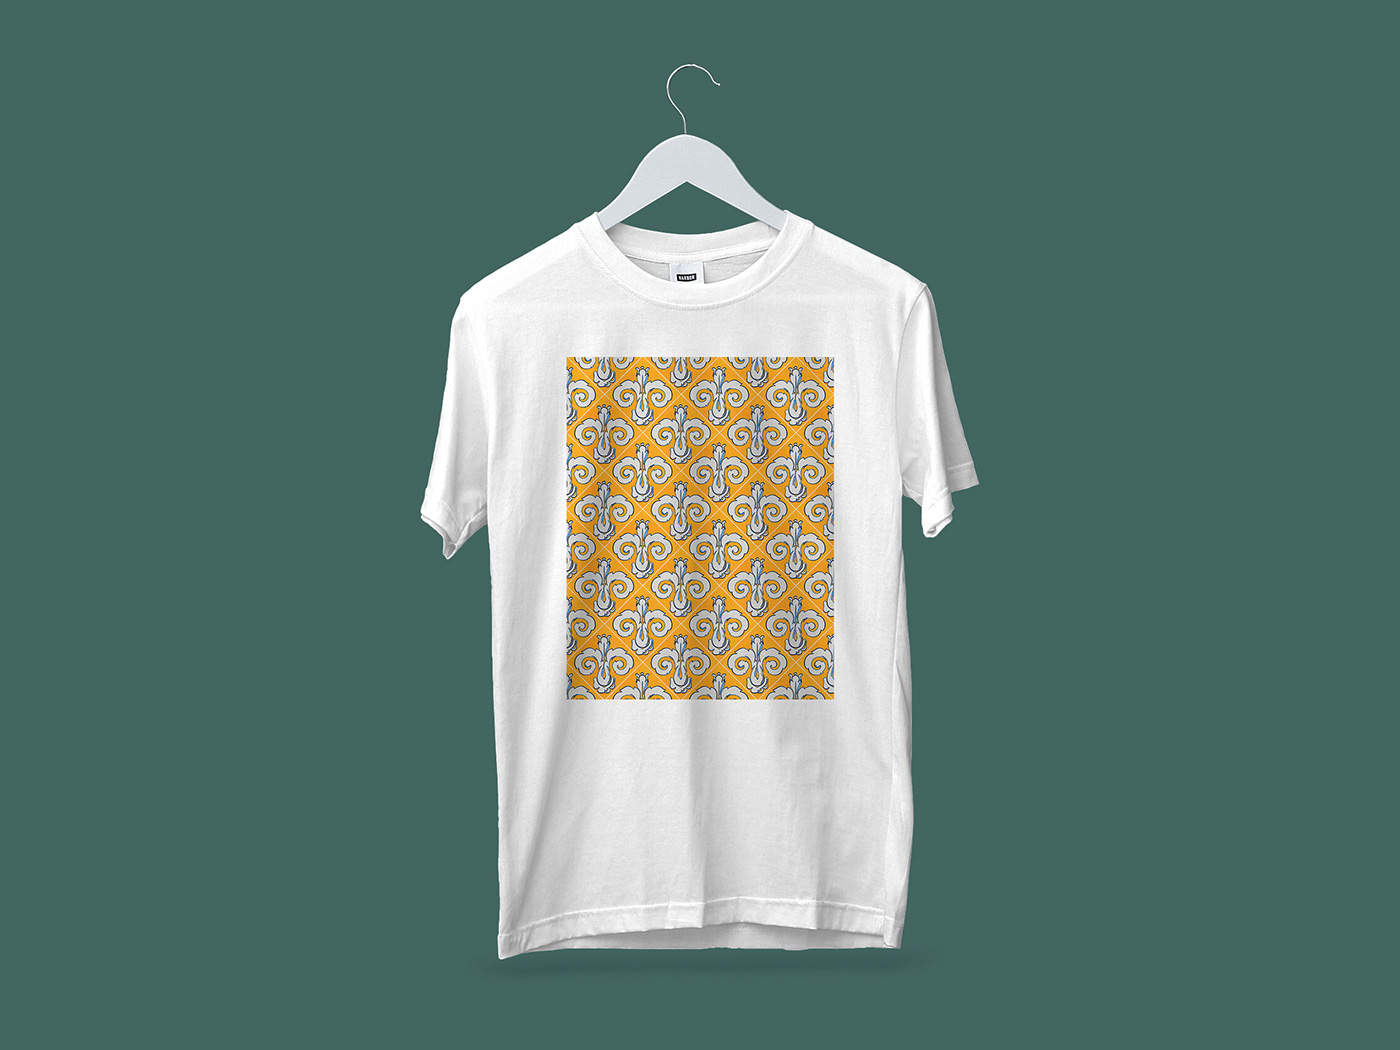 Mockup camiseta motivo textil diseño azulejo valencia spain